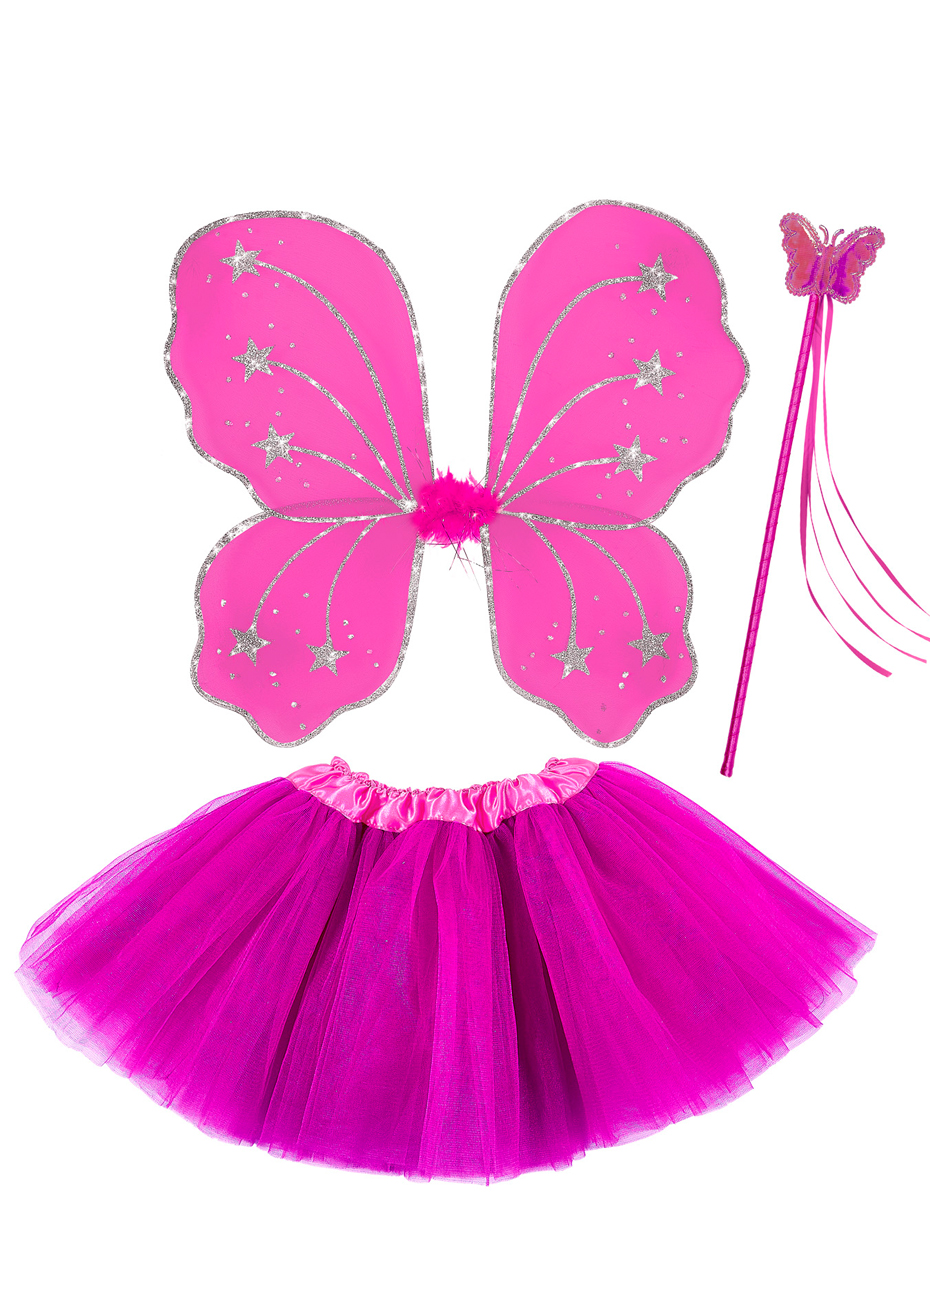 Deguisement Licorne Fille Princess Enfant, Jupe Tutu en Ruban Bandeau  Licorne,Costume Licorne pour Carnaval Fête Anniversaire Cadeaux pour Filles